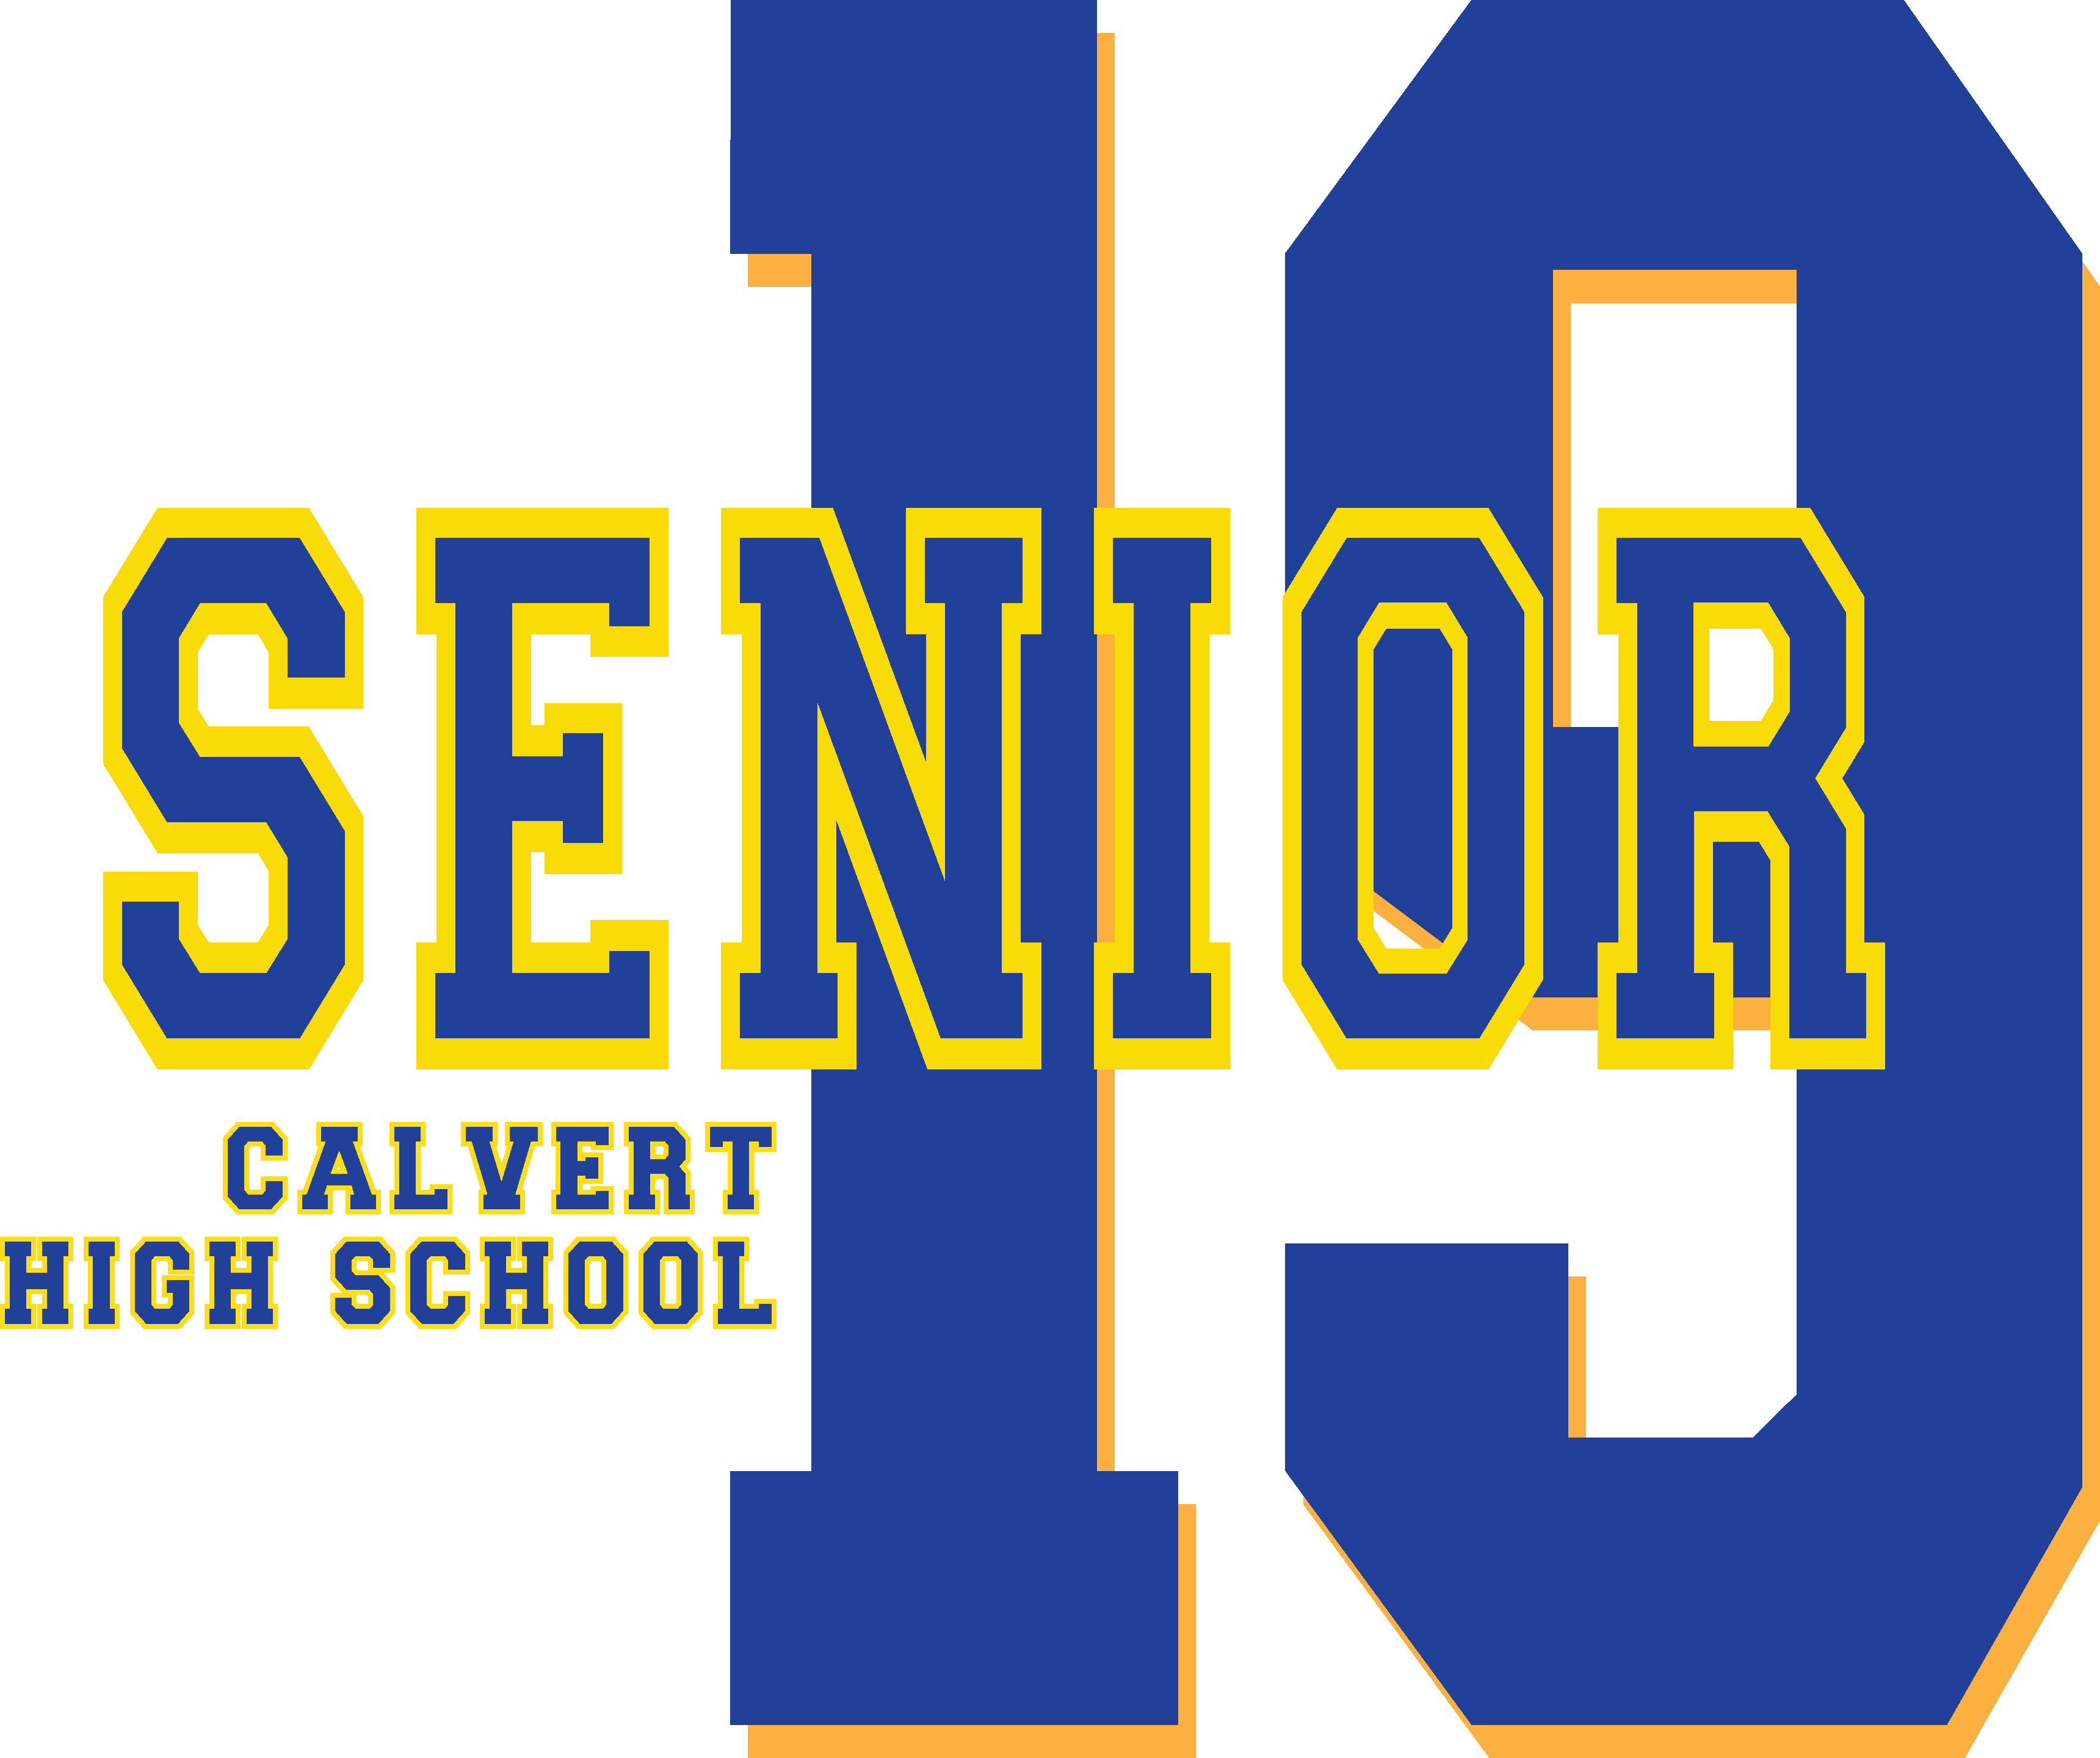 Calvert High School Class Of - Calvert High School Class Of (3440x2880)